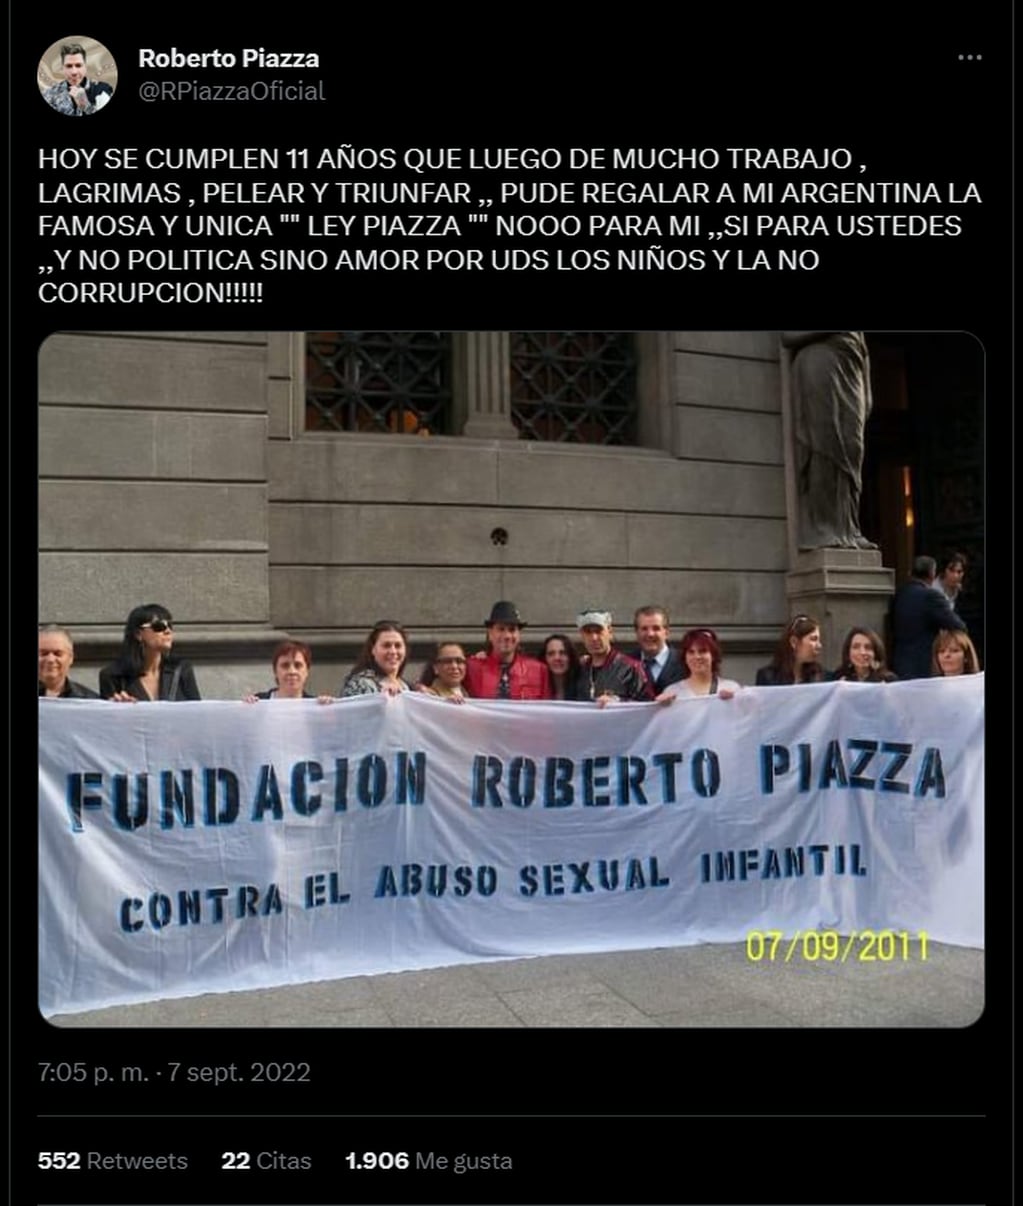 Roberto Piazza y su lucha contra el abuso sexual infantil